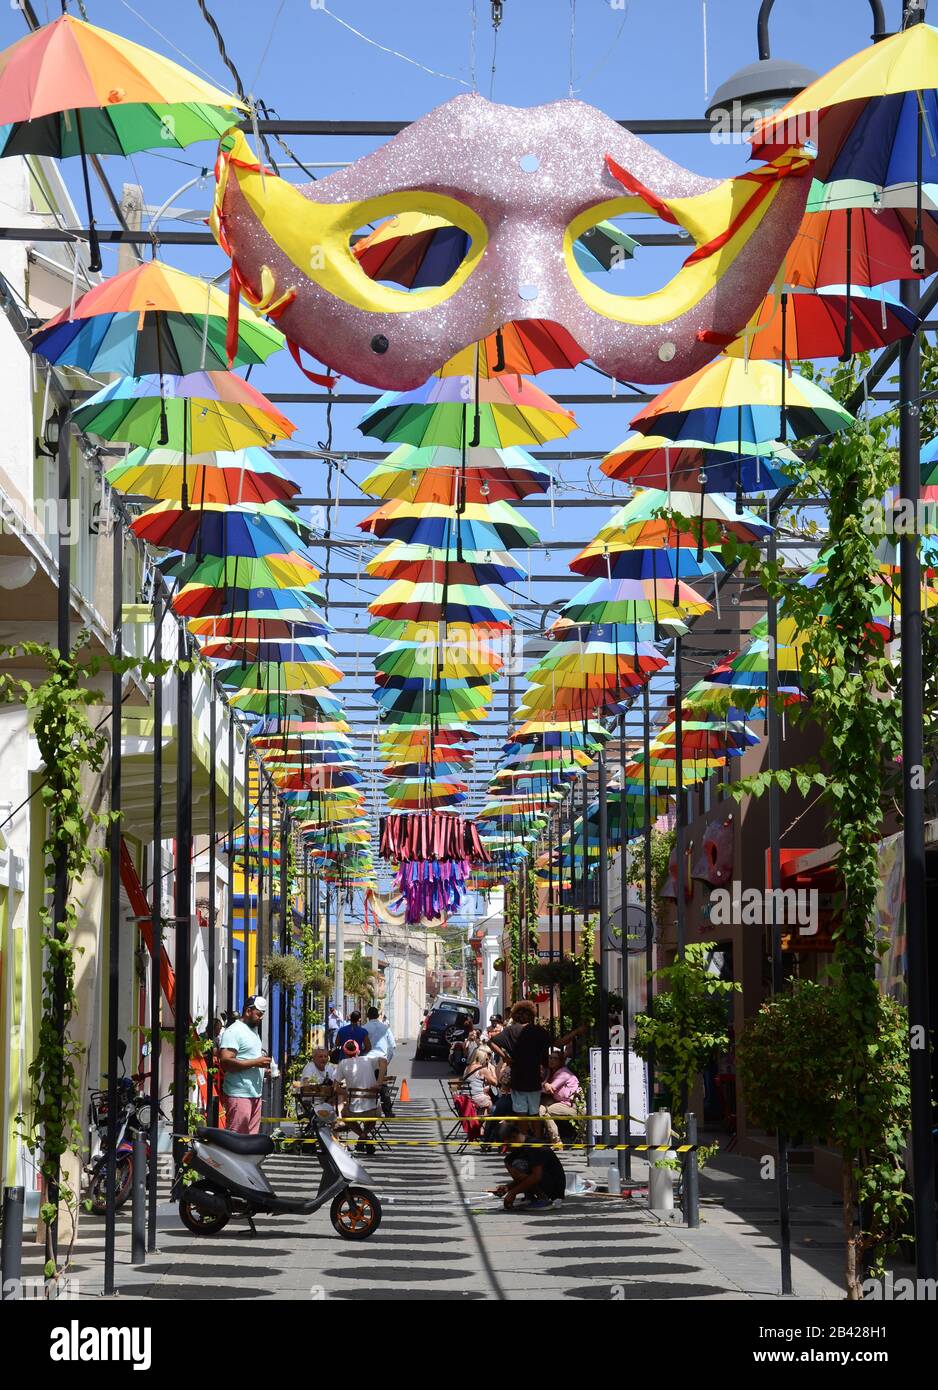 Calle de sombrillas, Puerto Plata, República Dominicana Fotografía de stock  - Alamy